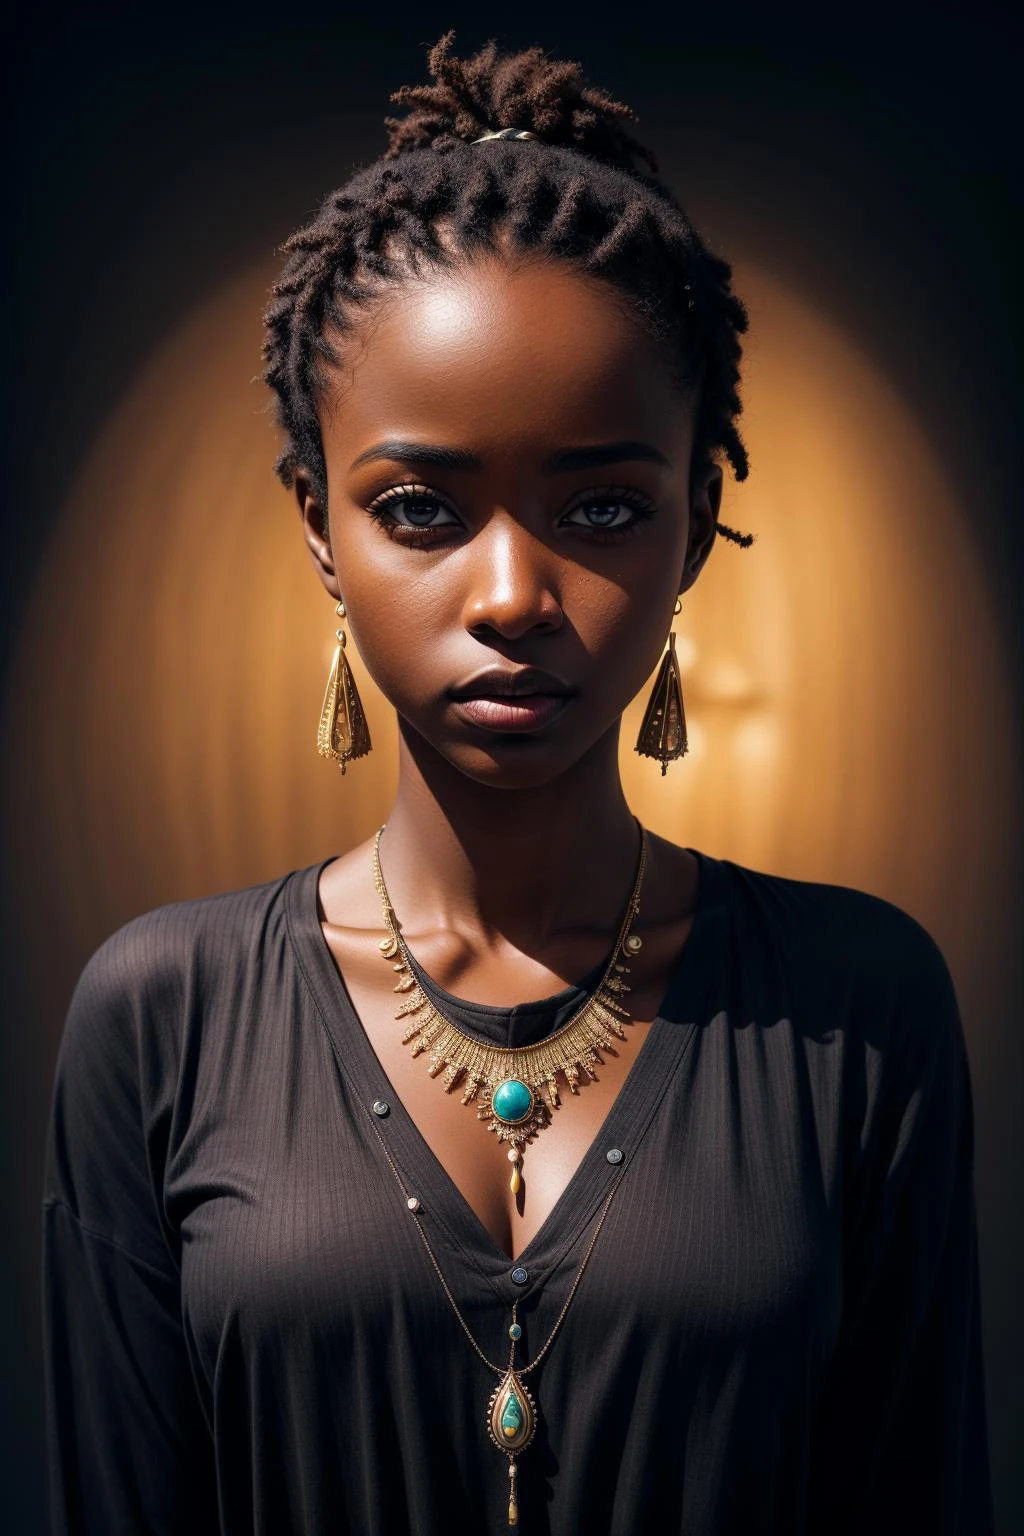 Obra de arte, melhor qualidade, resolução ultra alta, 1 garota africana de pele escura, (arte fractal:1.3), sombra profunda, tema escuro, totalmente vestido, colar, abandonado, tiro de vaqueiro